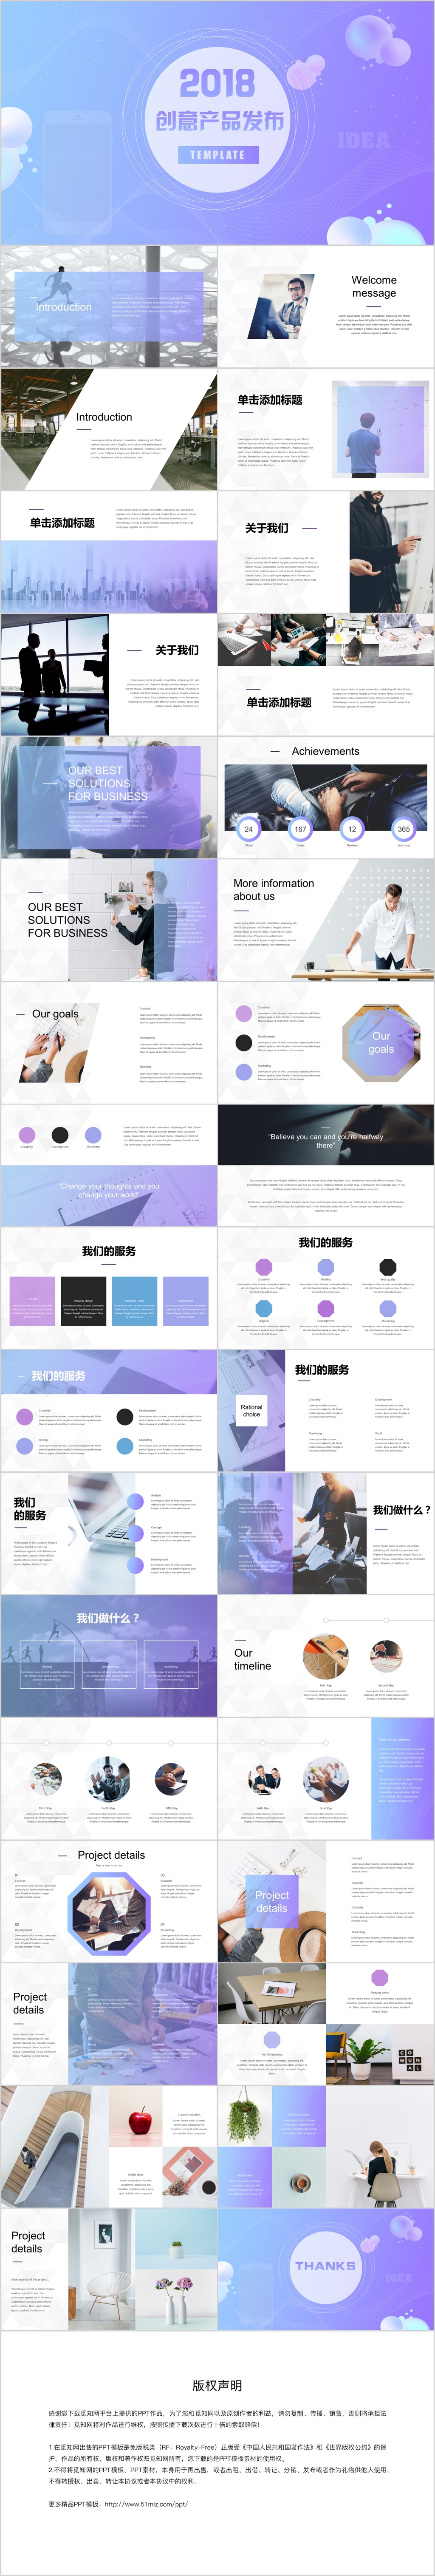 紫蓝时尚简约创意产品发布产品介绍PPT模板